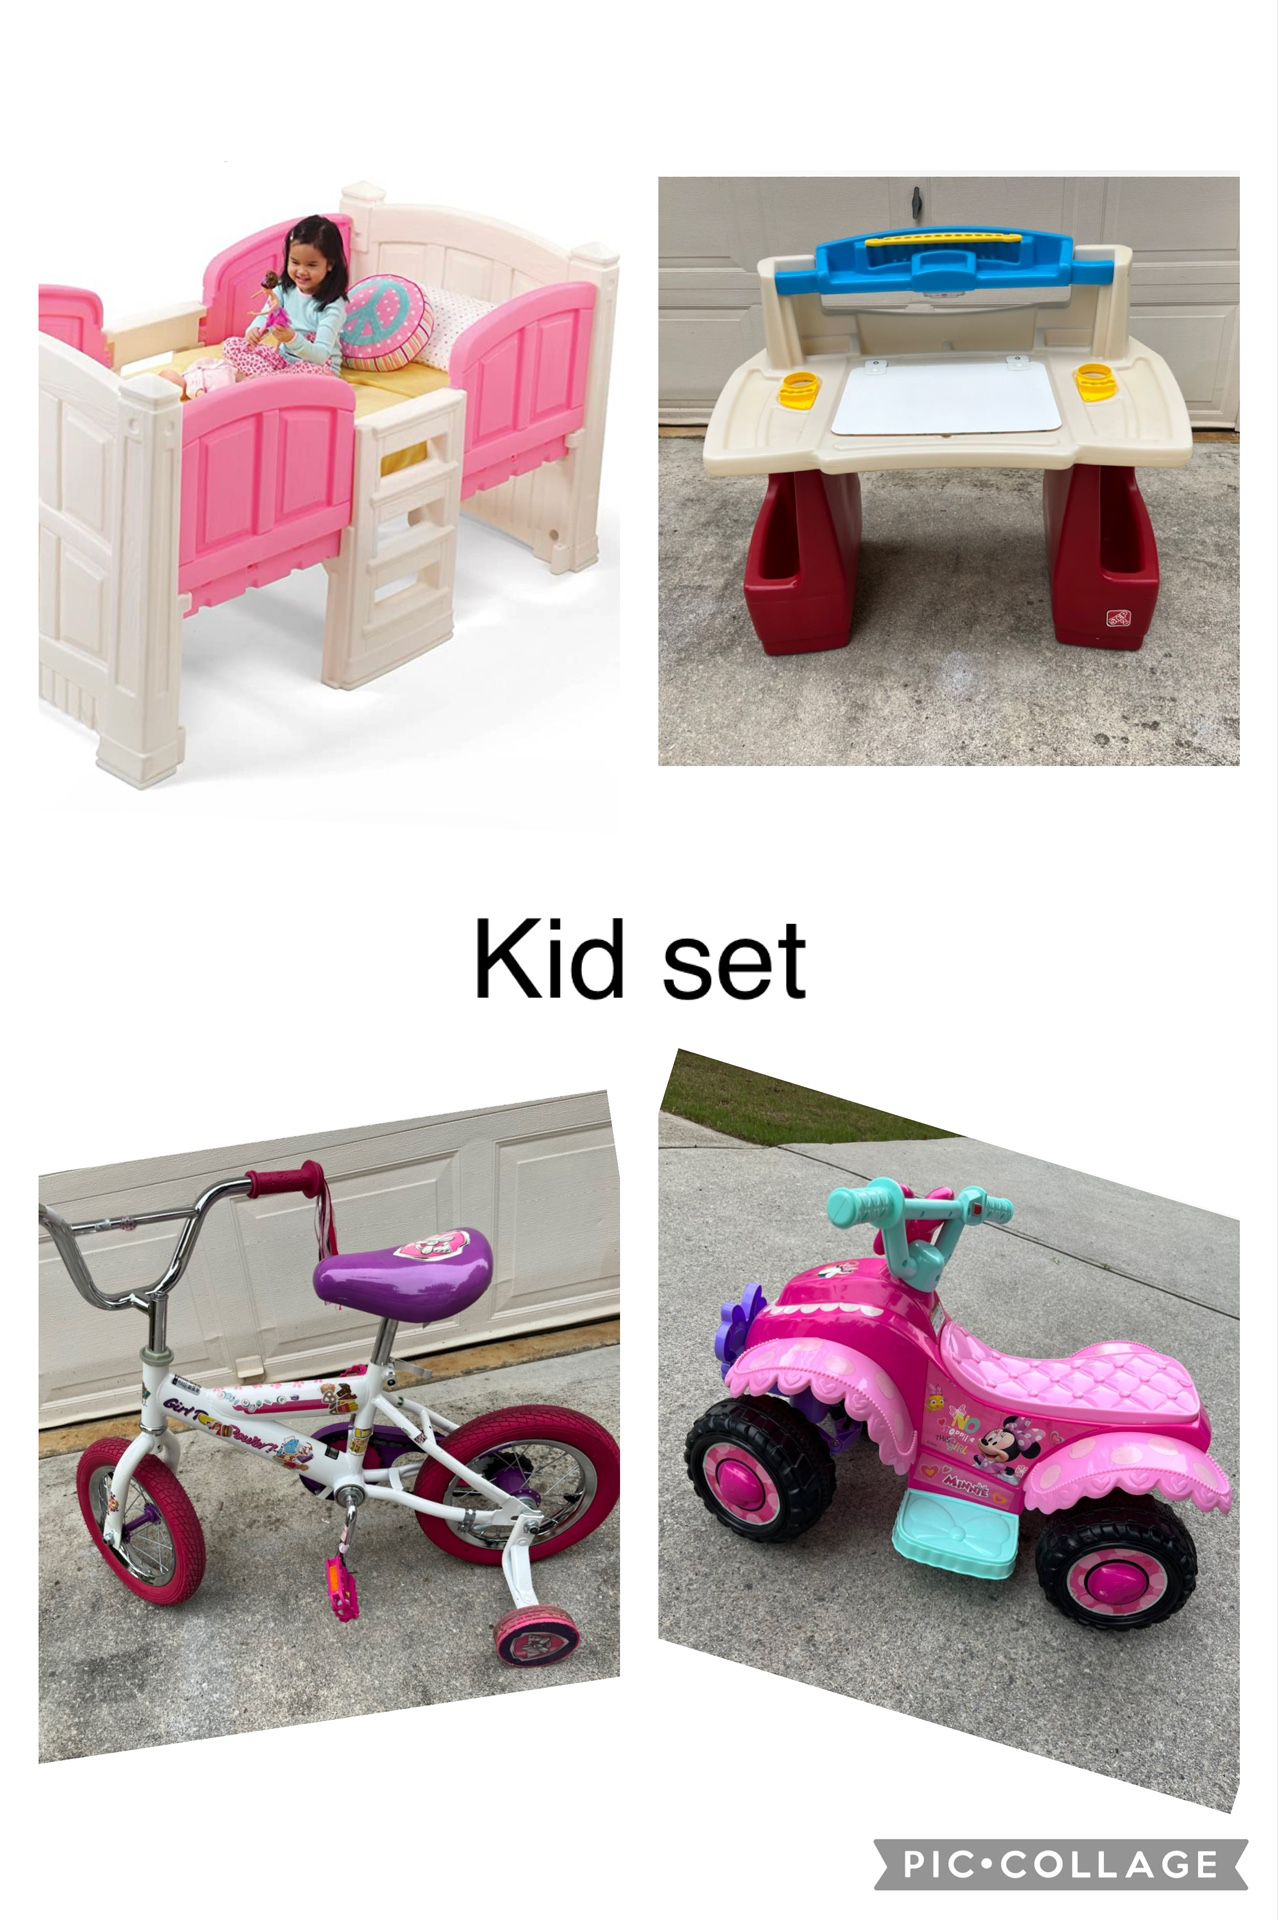 Kid Set - Bed, Desk, Bike, Car